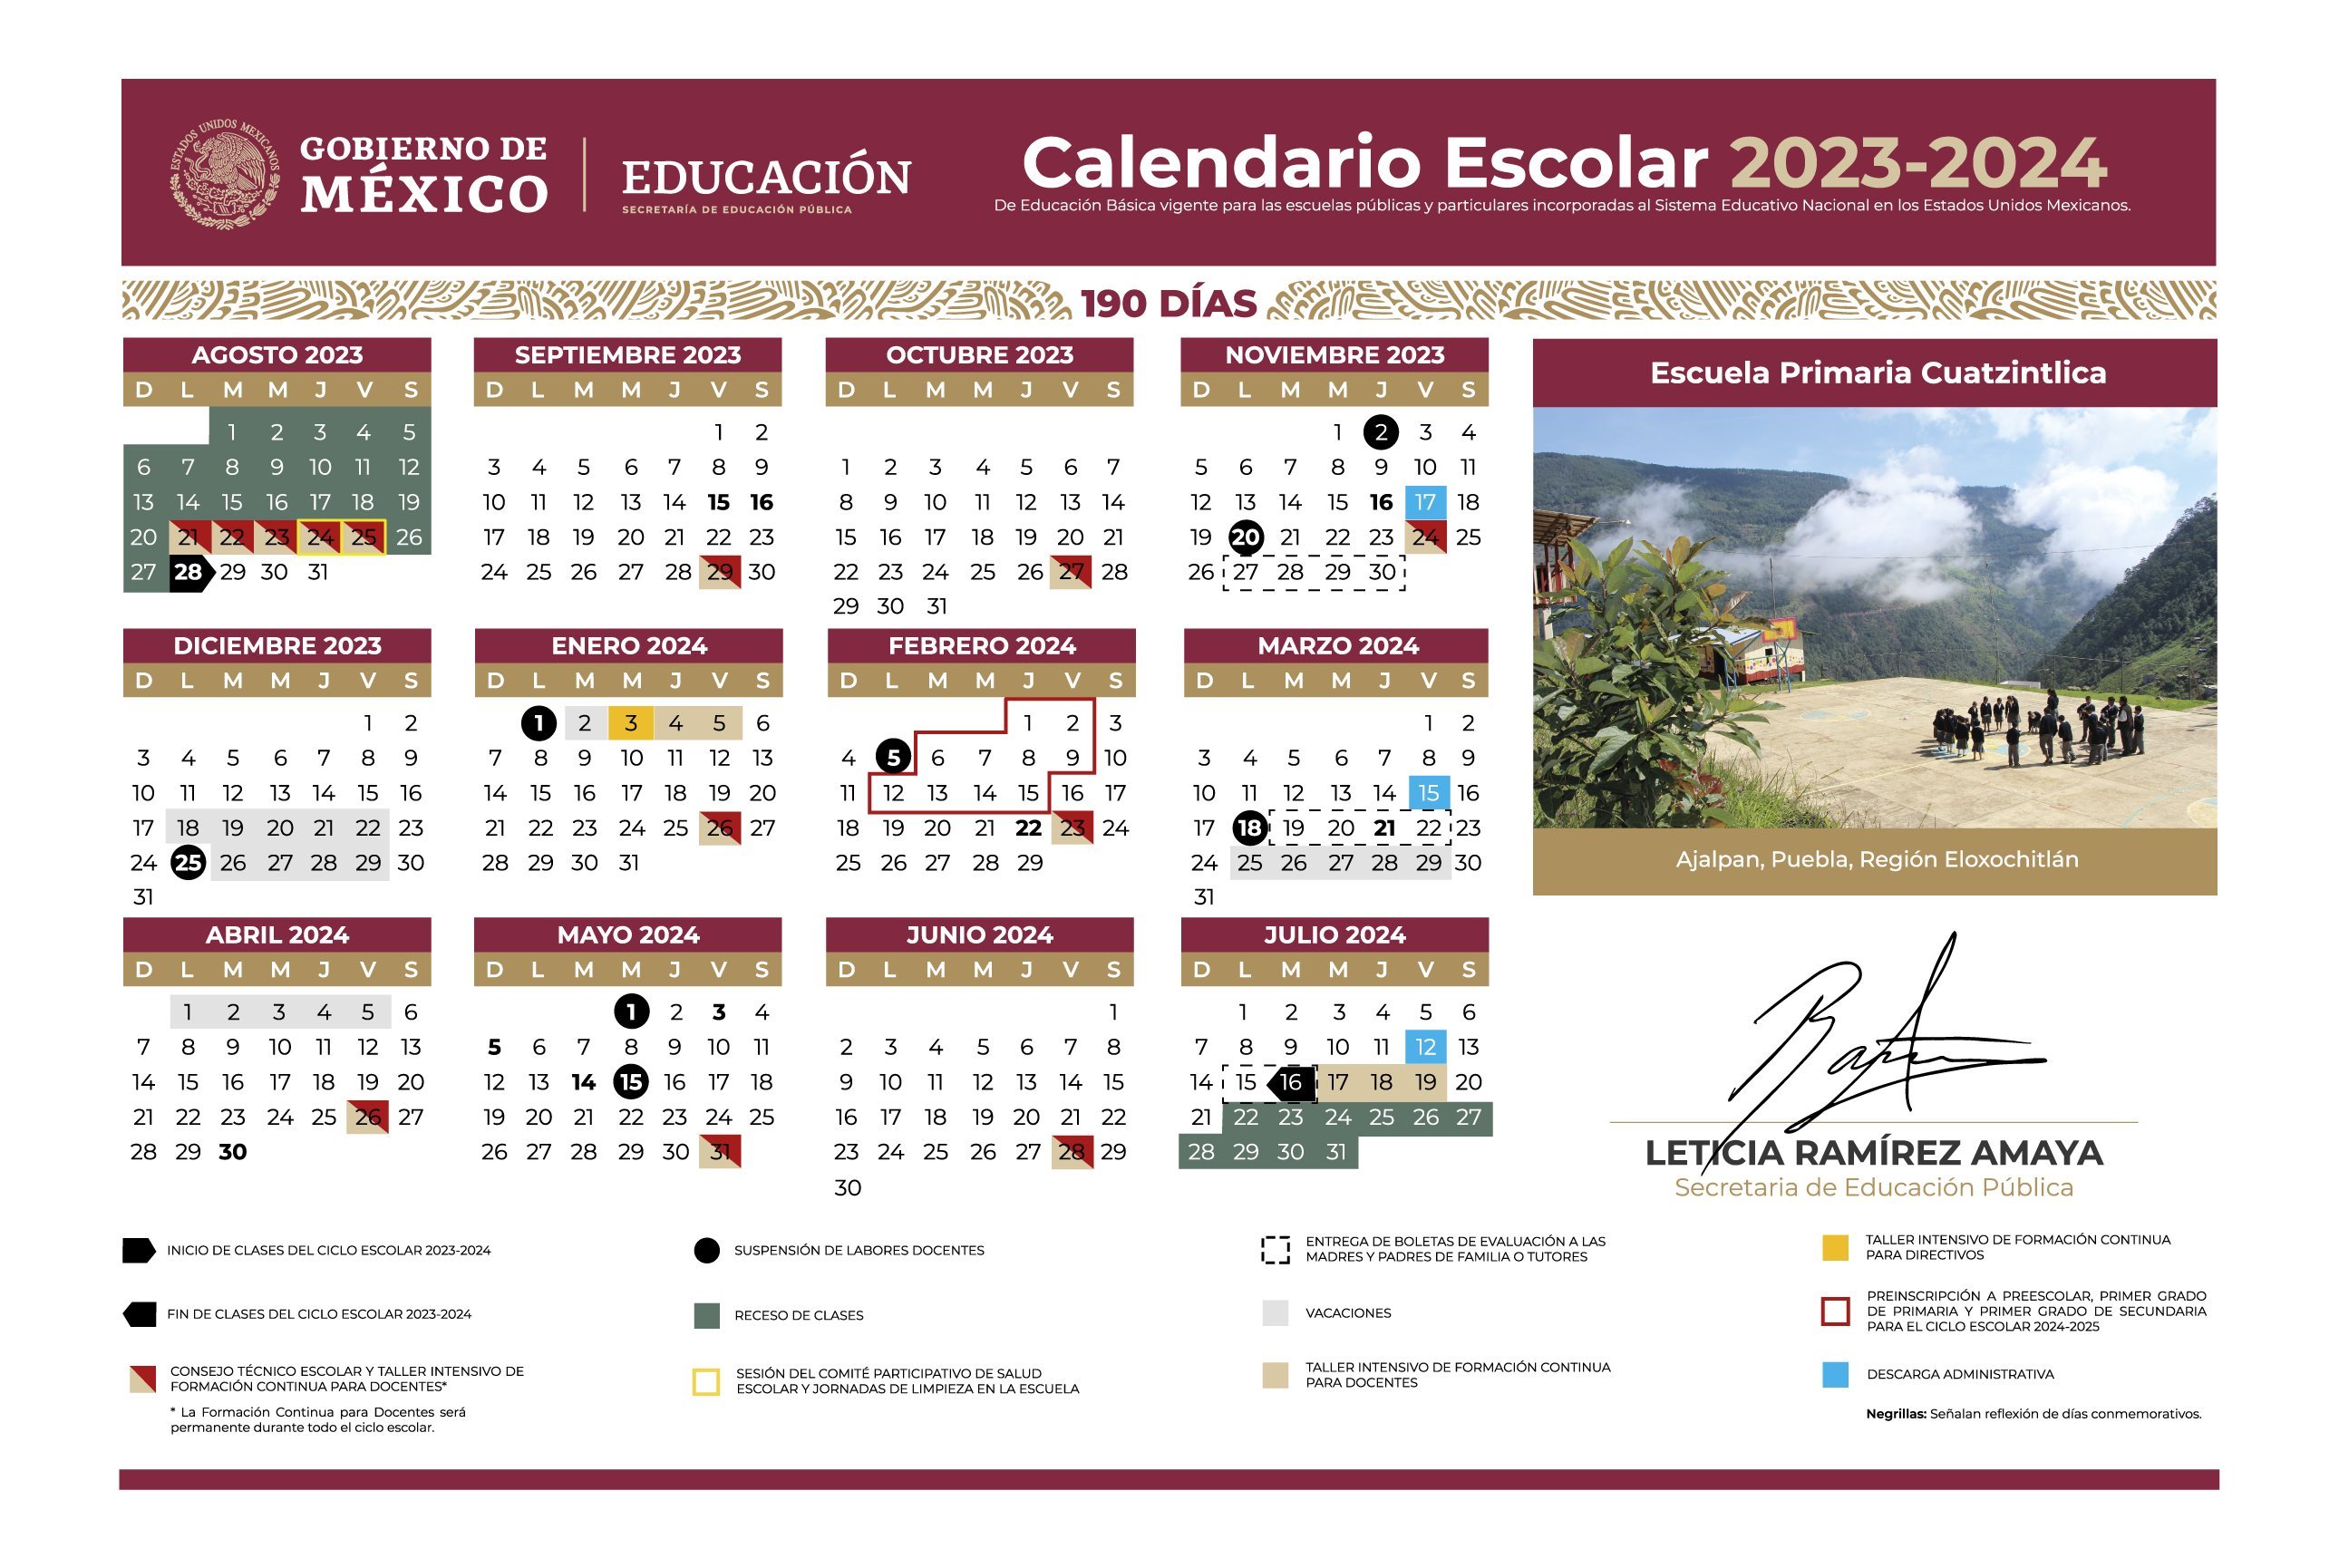 Calendario de la Secretaría de Educación Pública